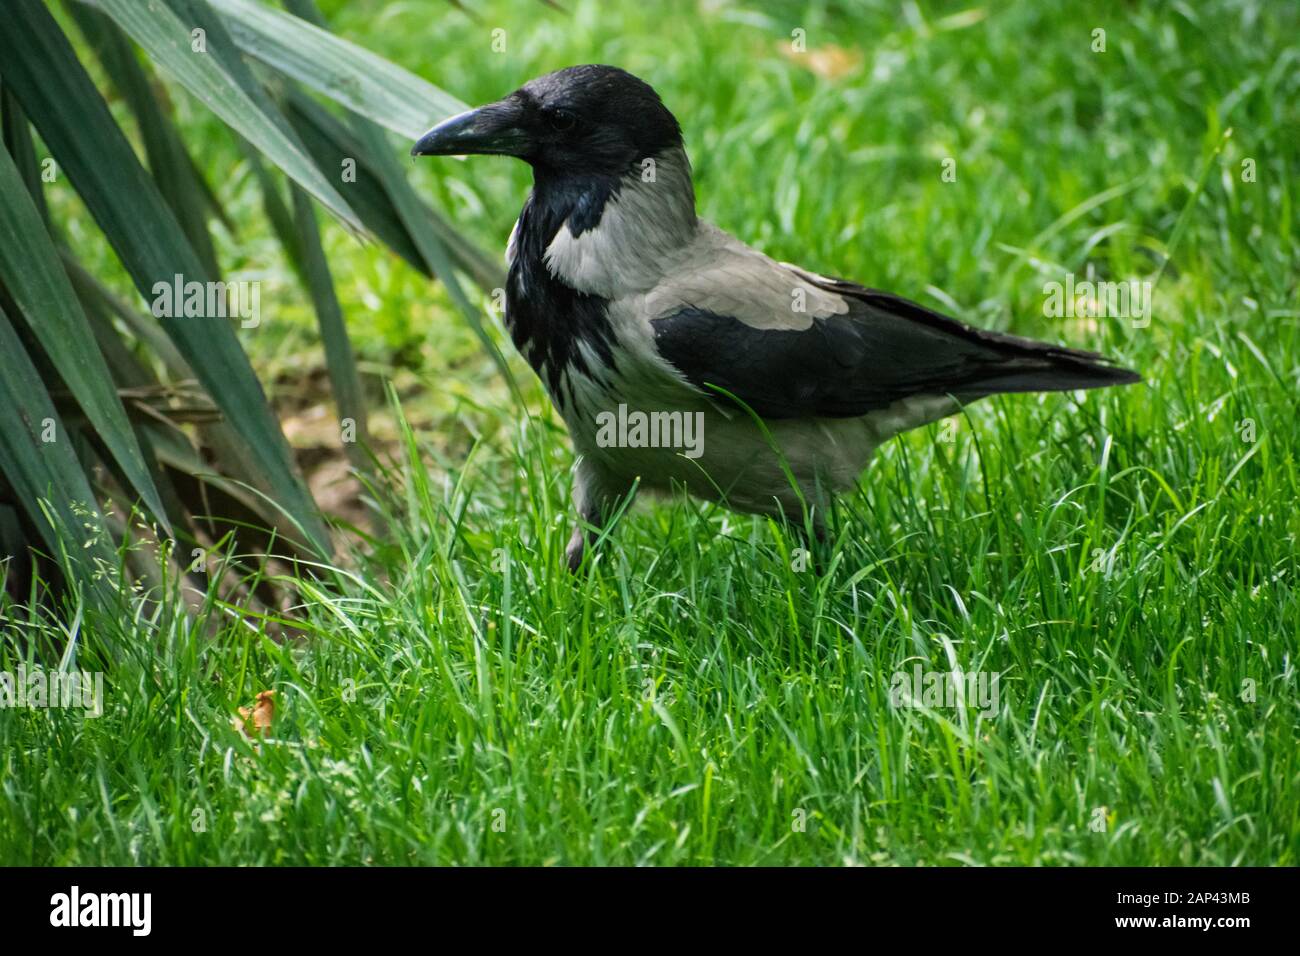 corvo con cappuccio che cammina attraverso l'erba, alla ricerca di cibo nel parco pubblico Foto Stock